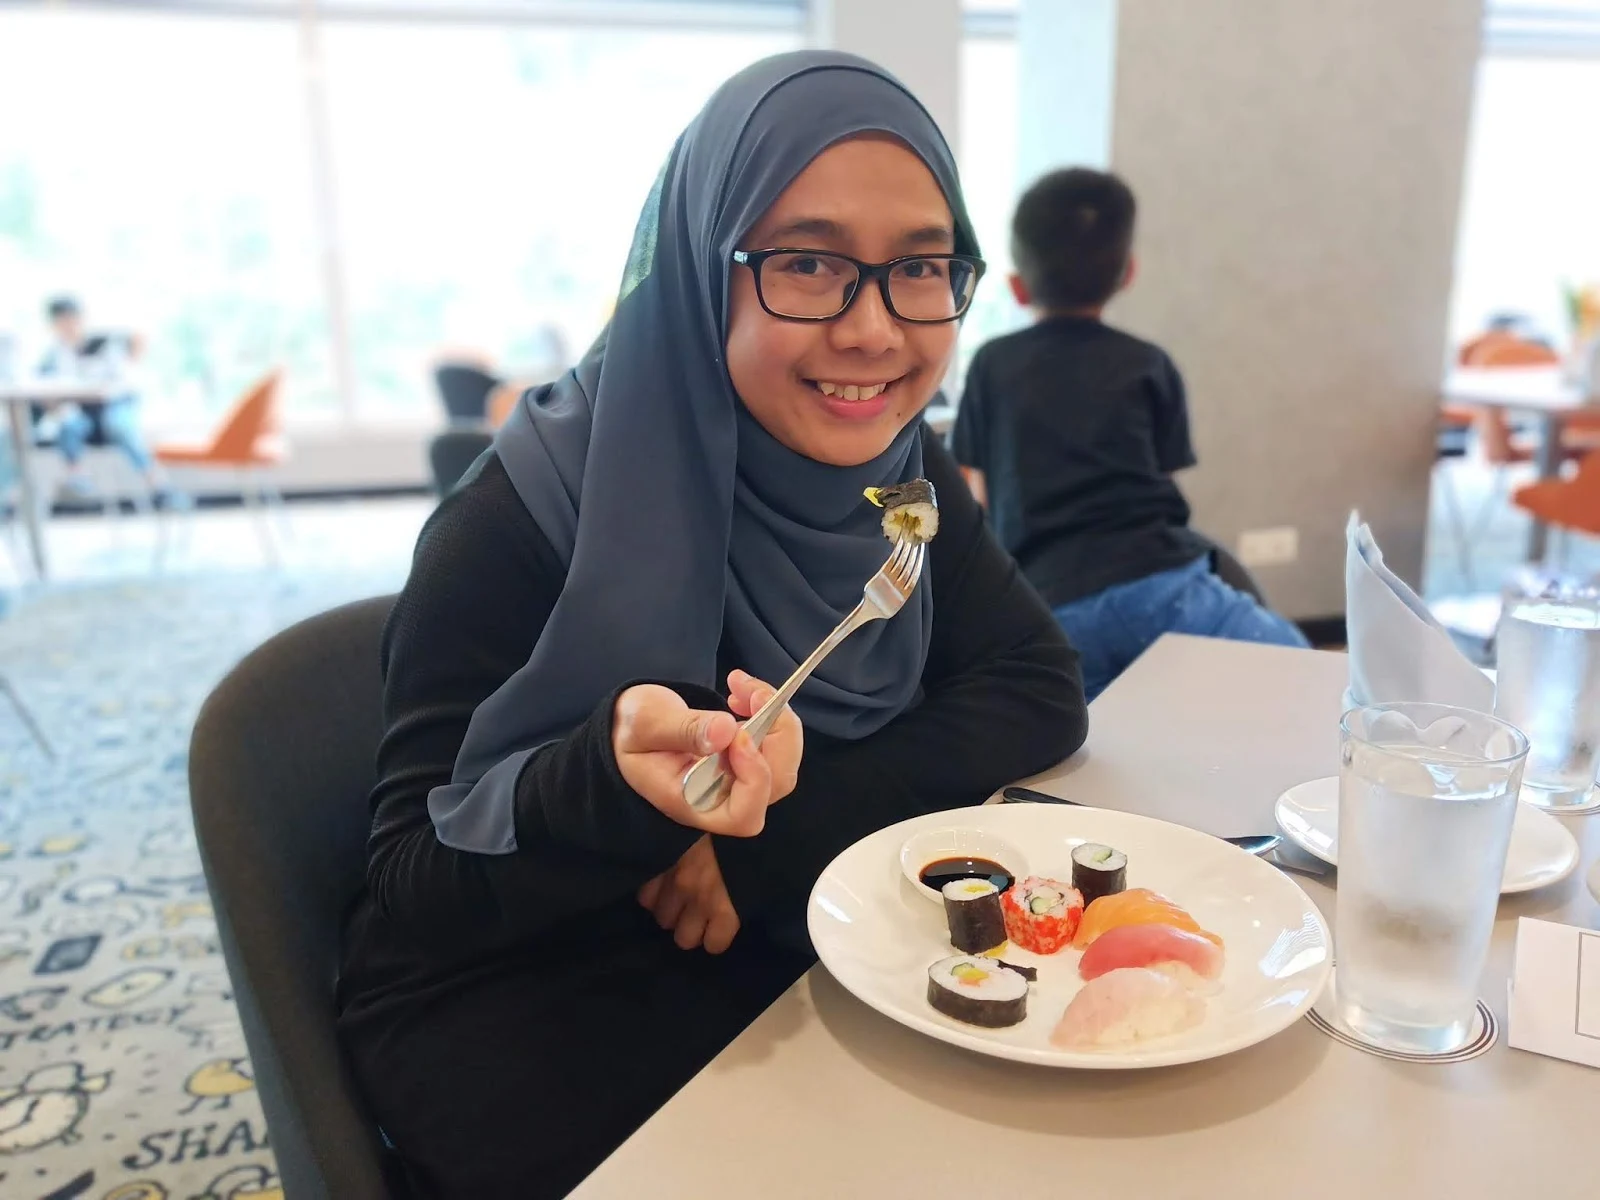 Bangi Resort Hotel : 5-Star Halal Food Trail Pada Harga Berpatutan